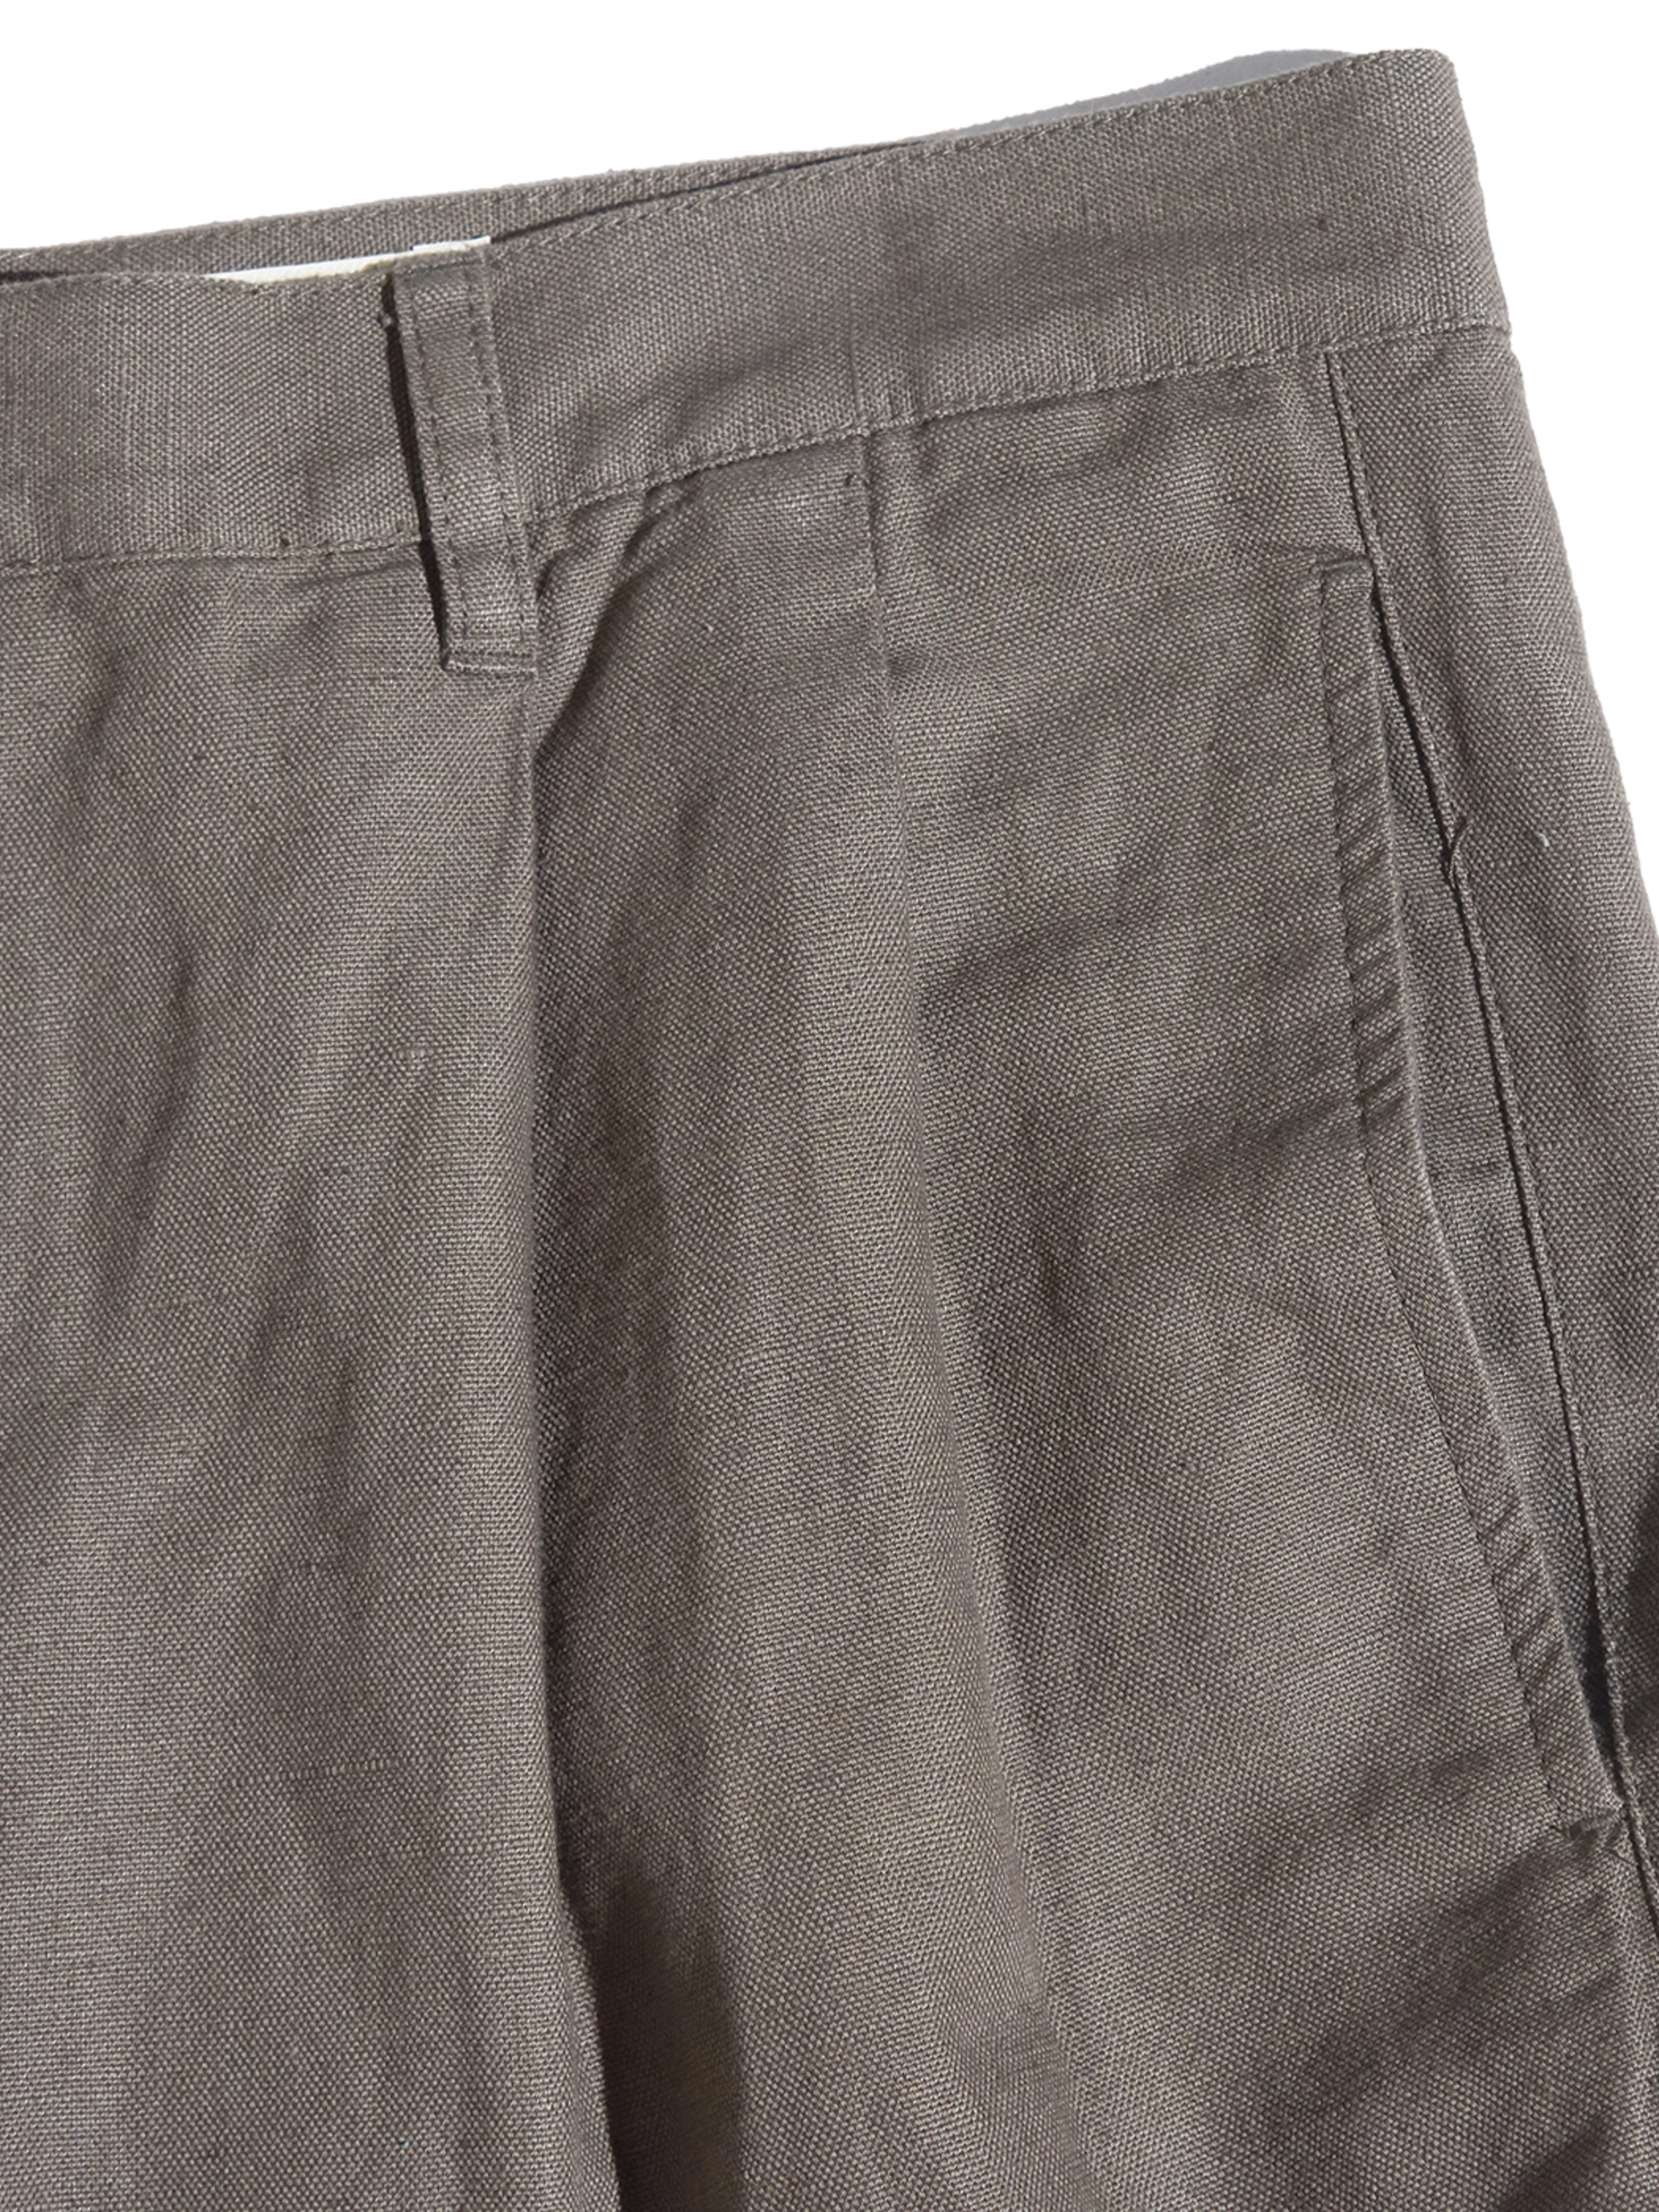 NOS 1990s "Eddie Bauer" cotton / linen tuck pants -KHAKI-